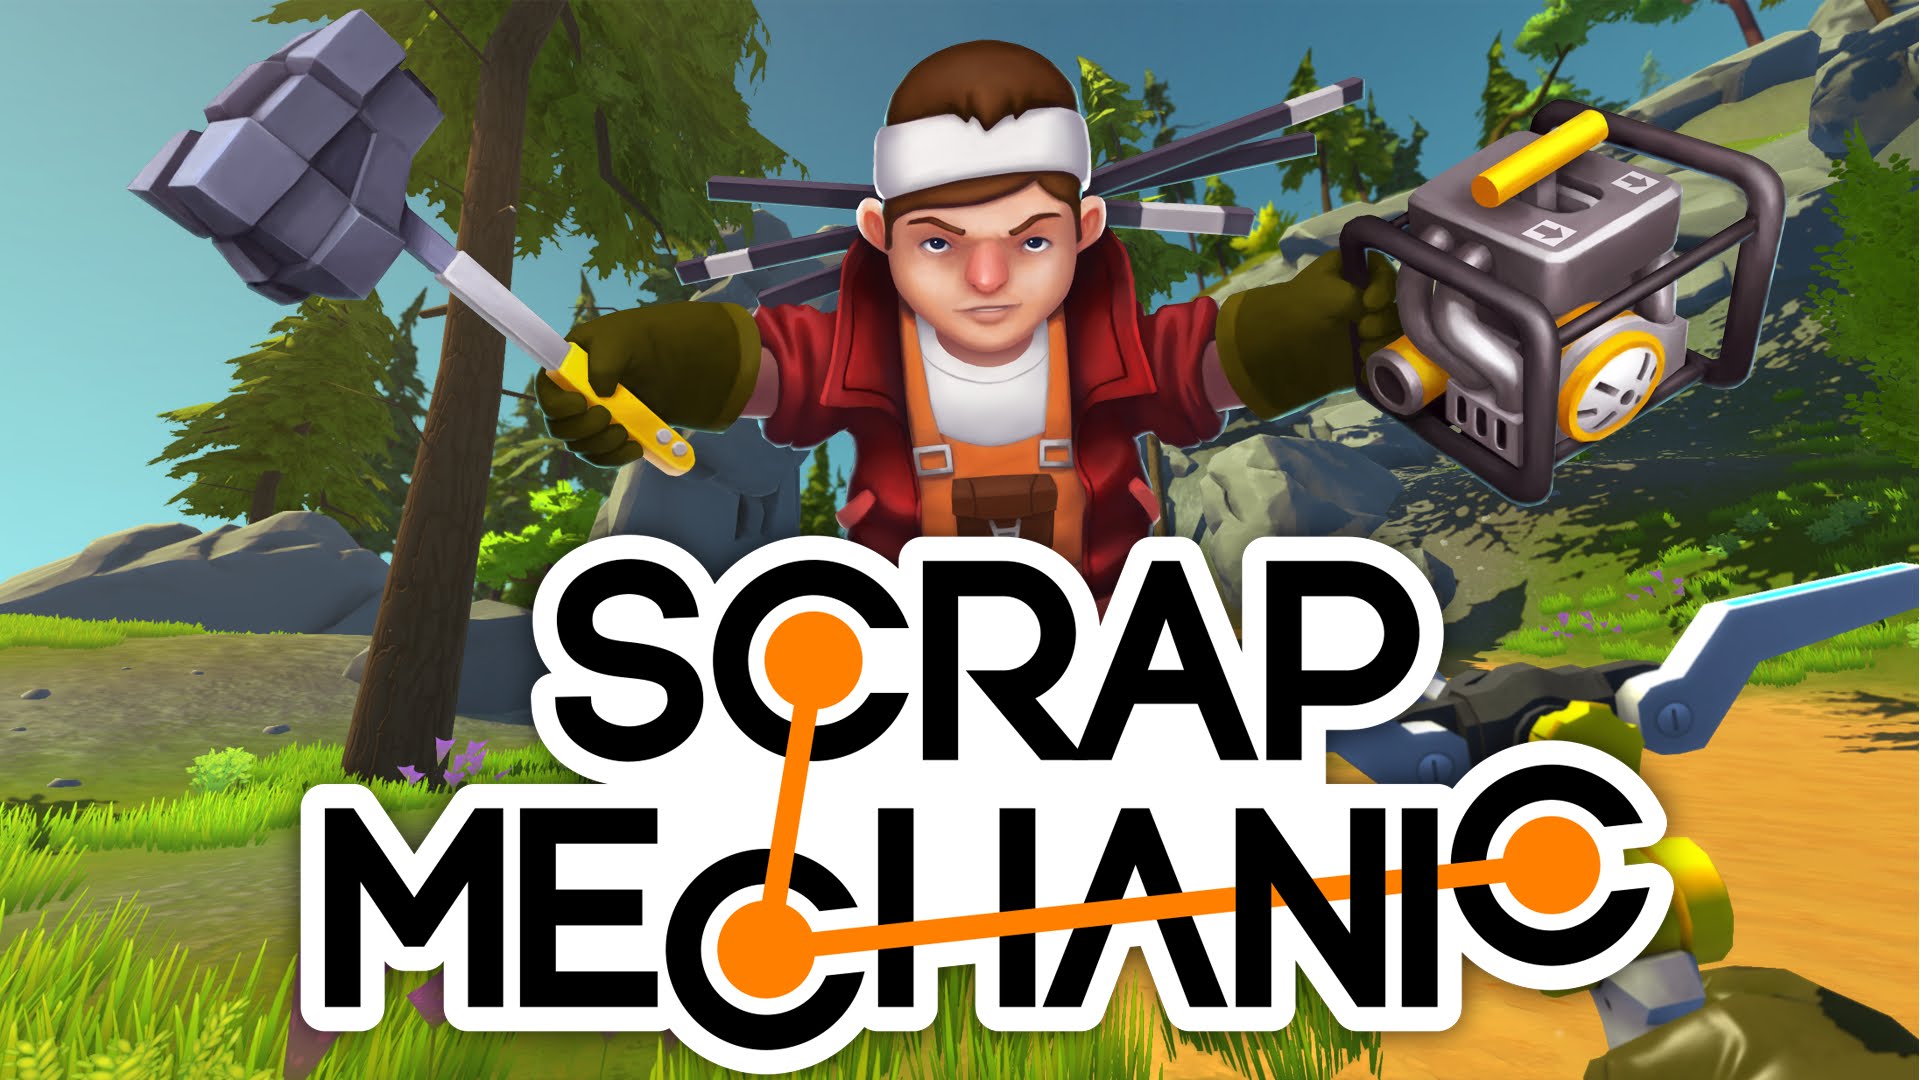 scrap mechanic full game free download